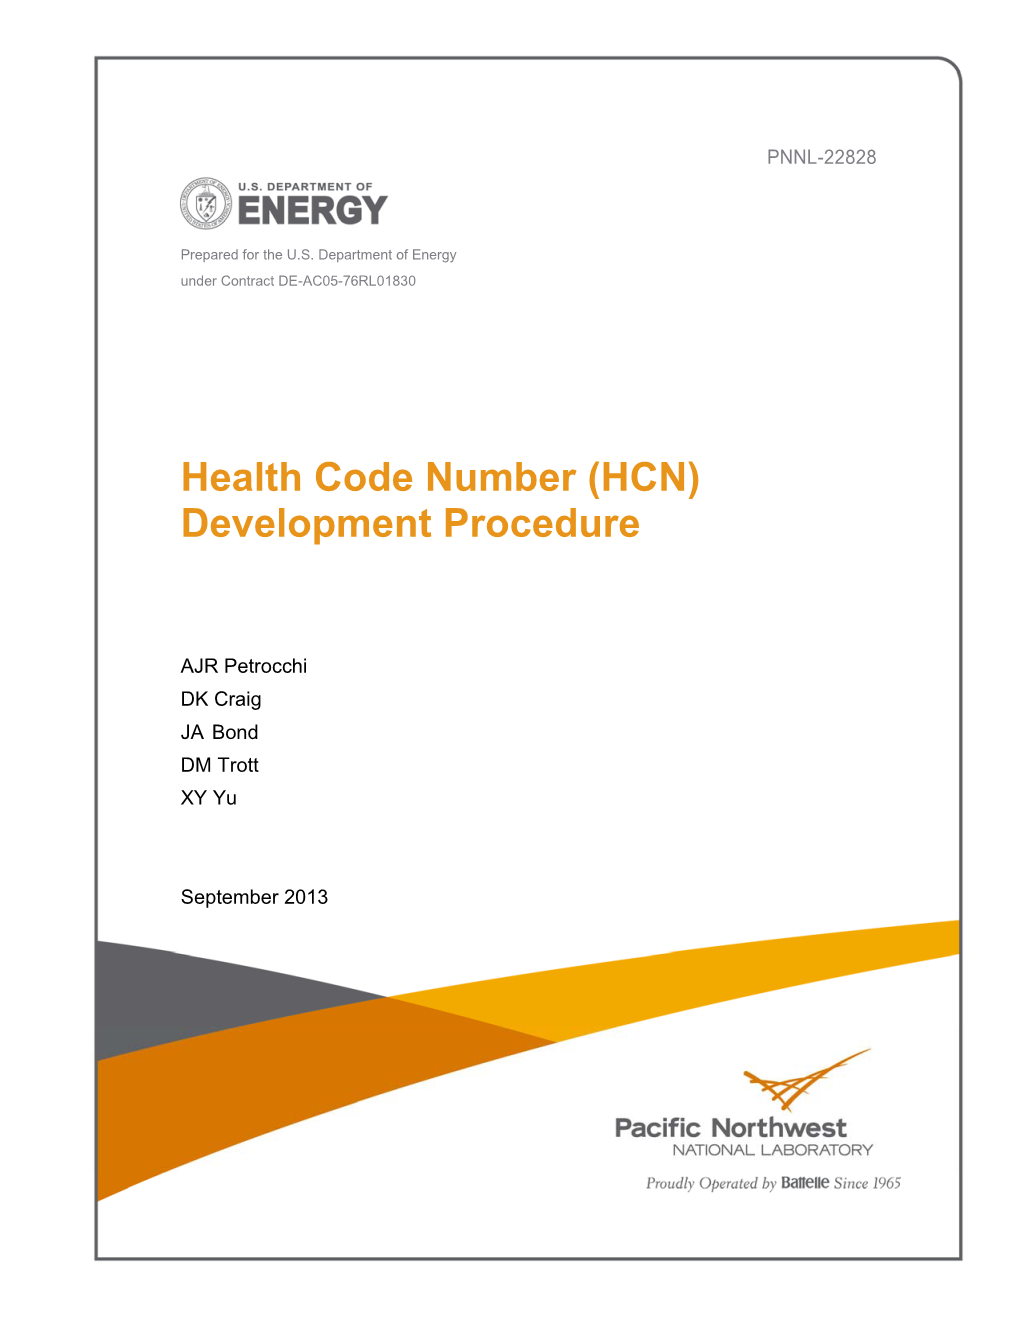 Health Code Number (HCN) Development Procedure